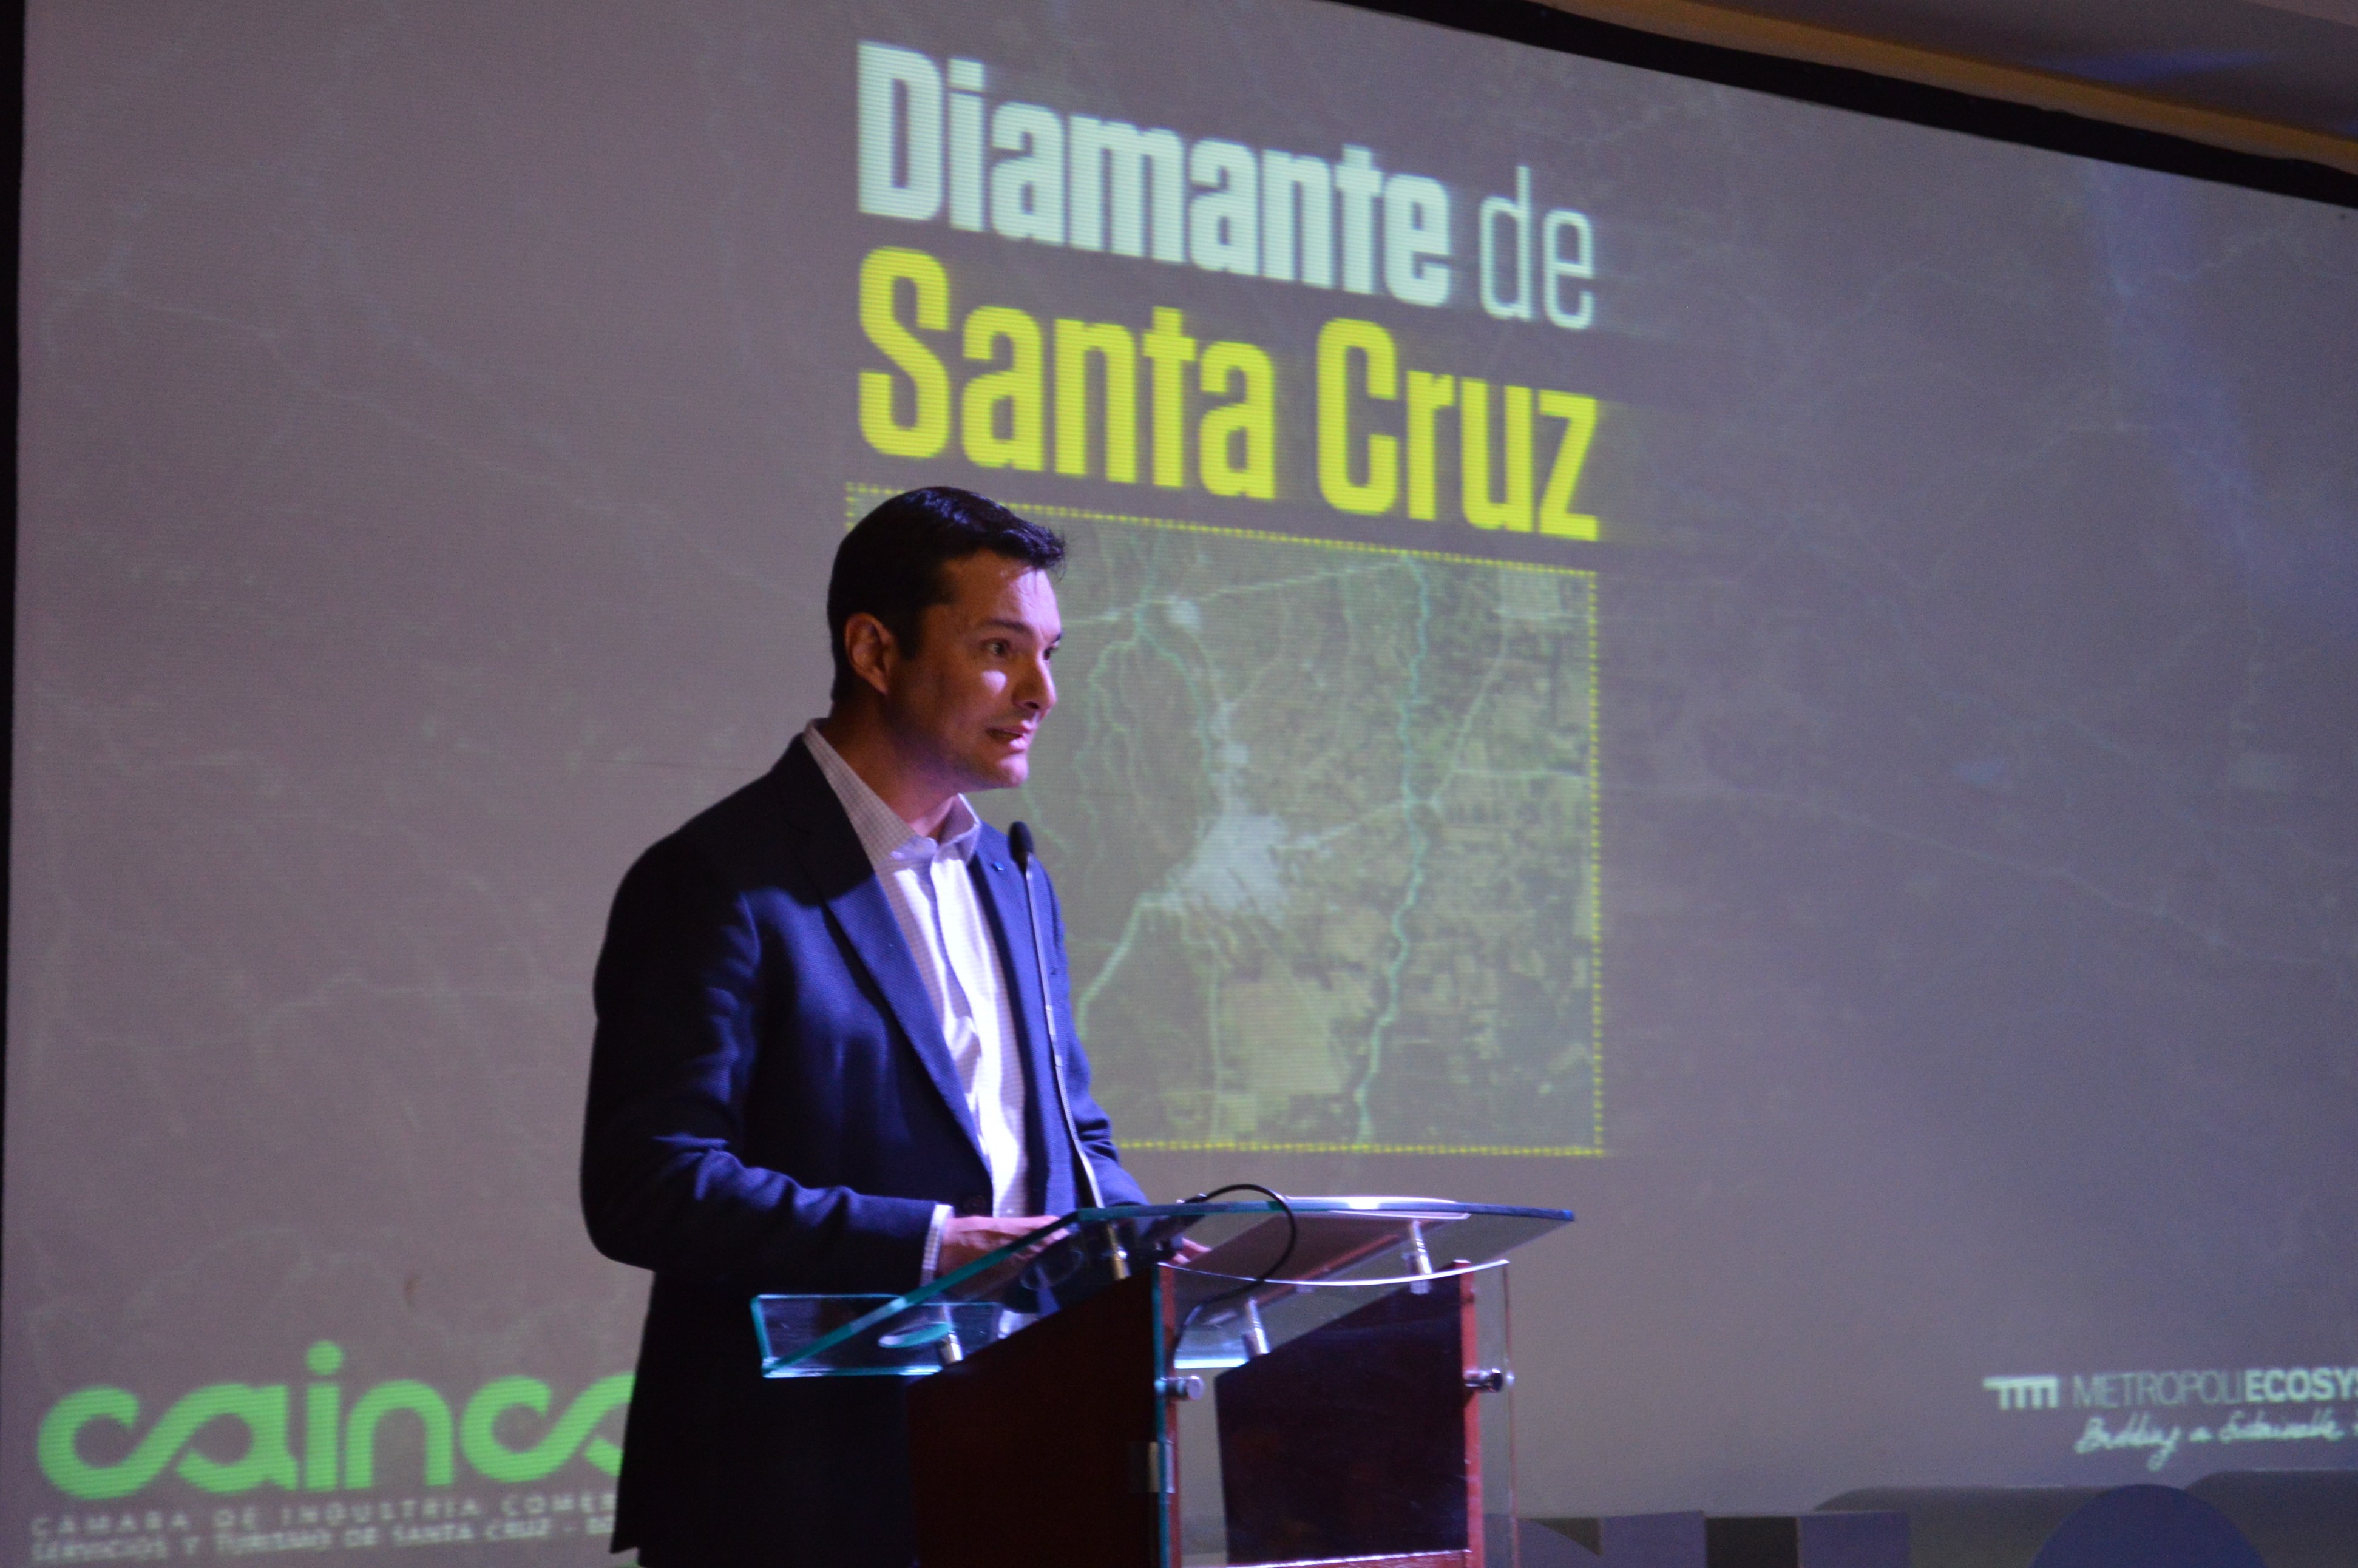 “Diamante de Santa Cruz” proyecta las potencialidades de la región metropolitana